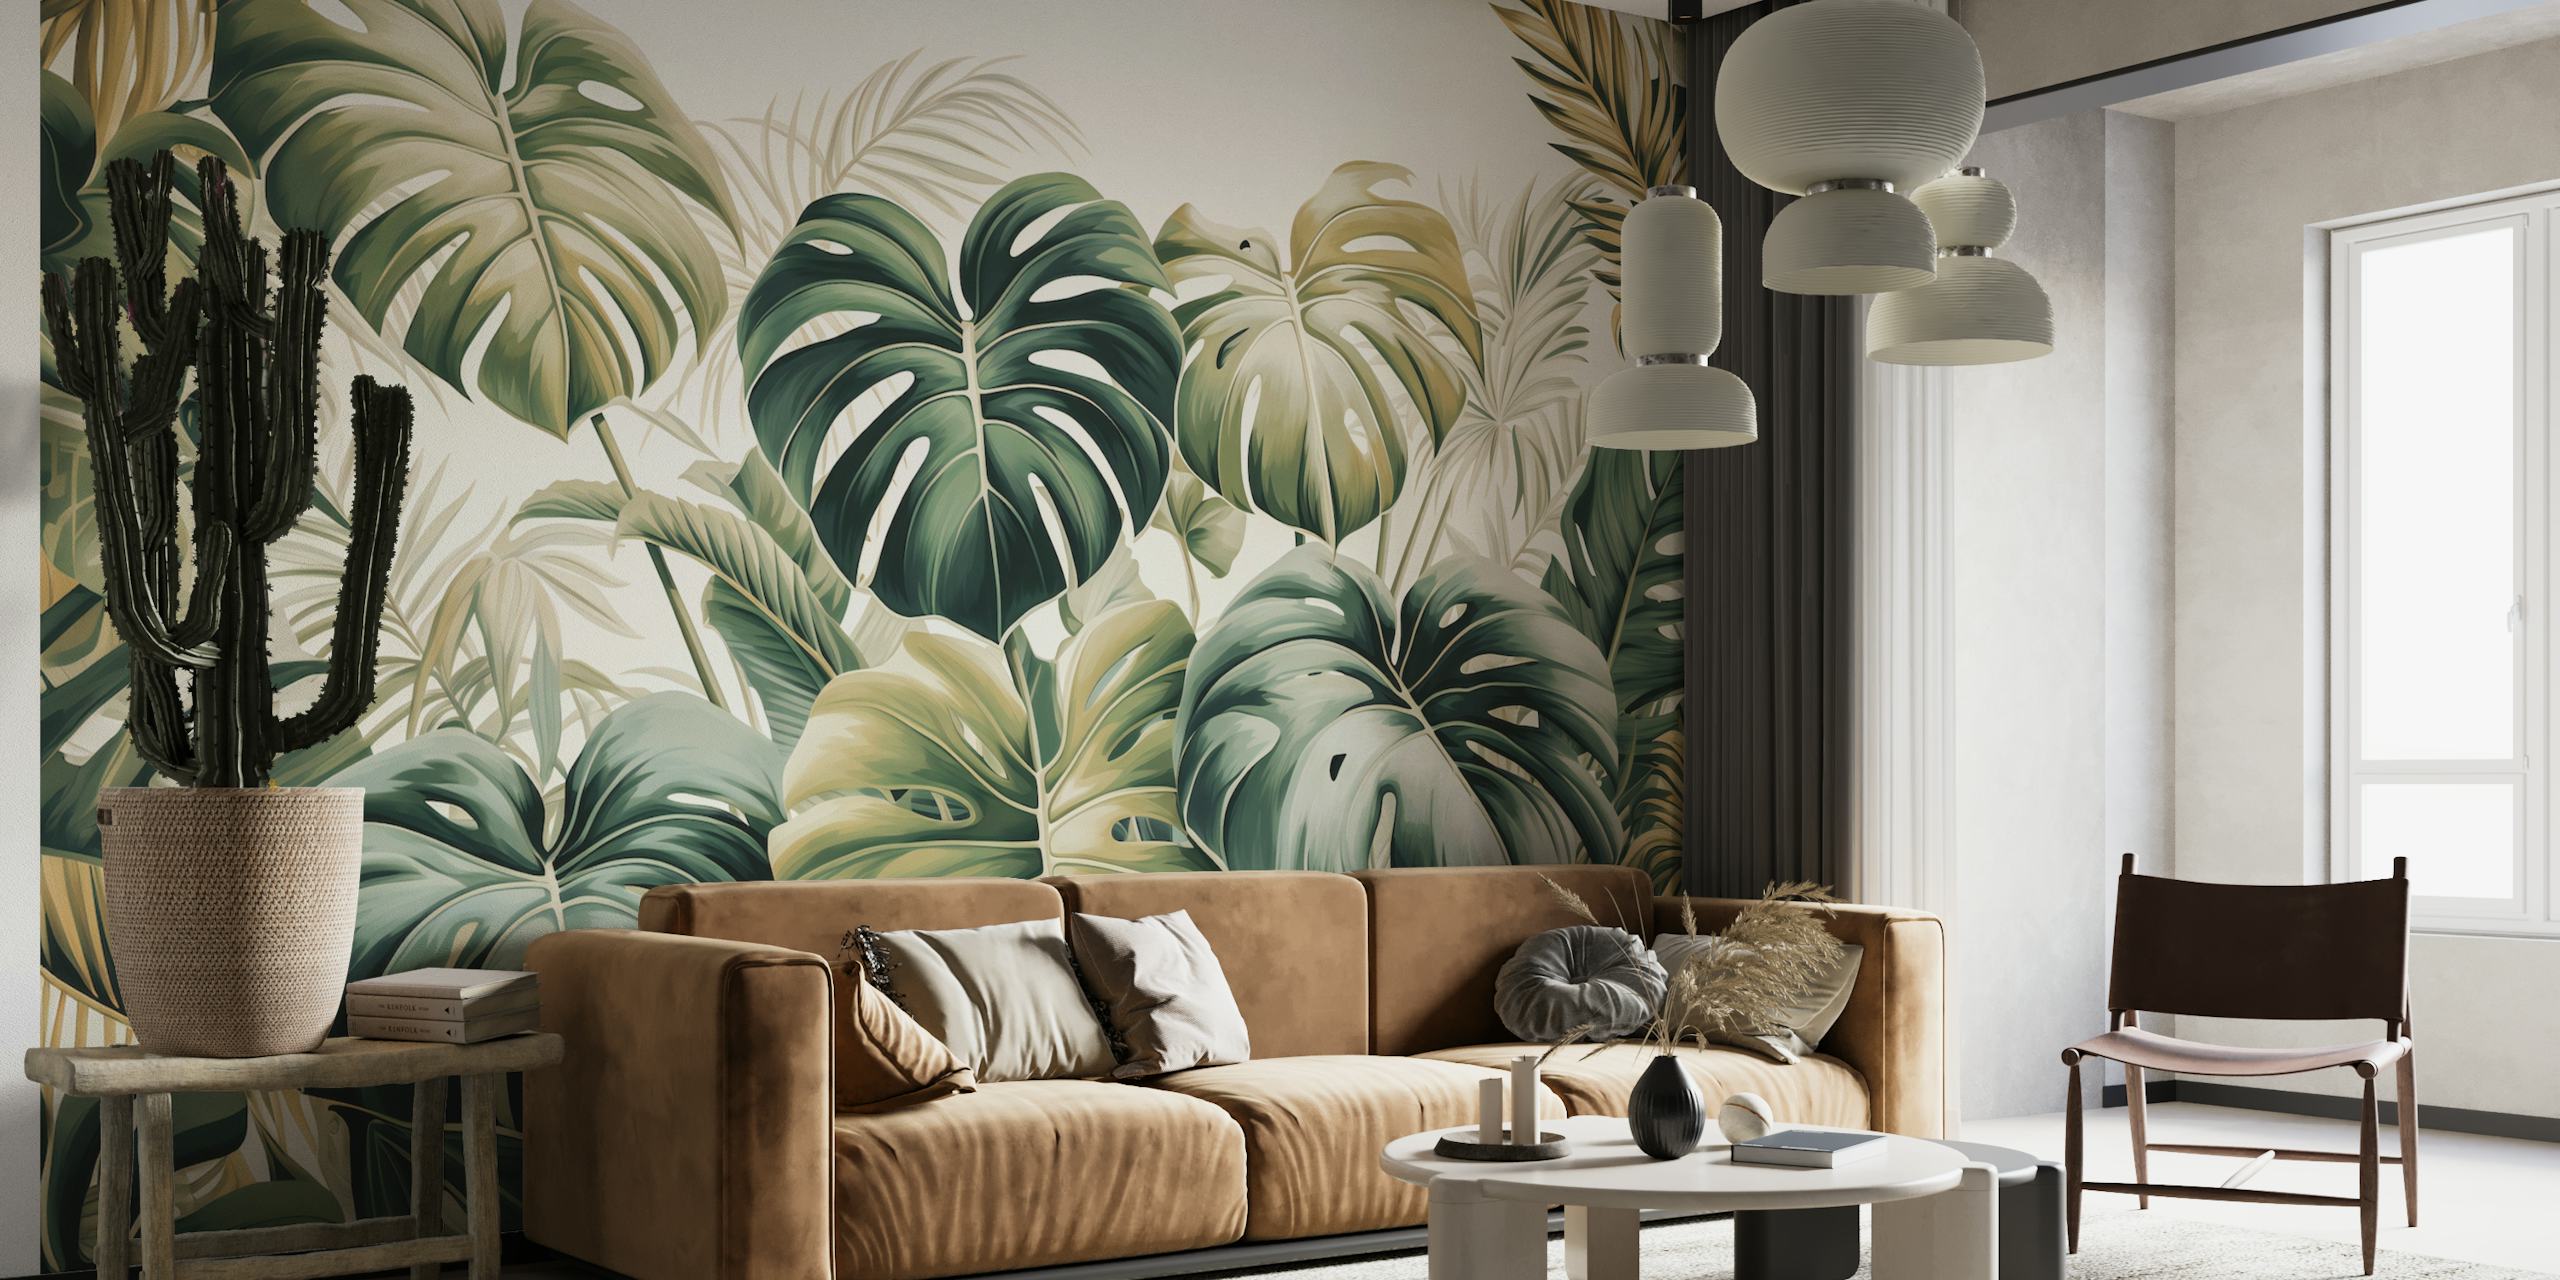 Üppig grünes Wandbild mit tropischen Blättern aus der Emerald Elegance-Kollektion unter happywall.com